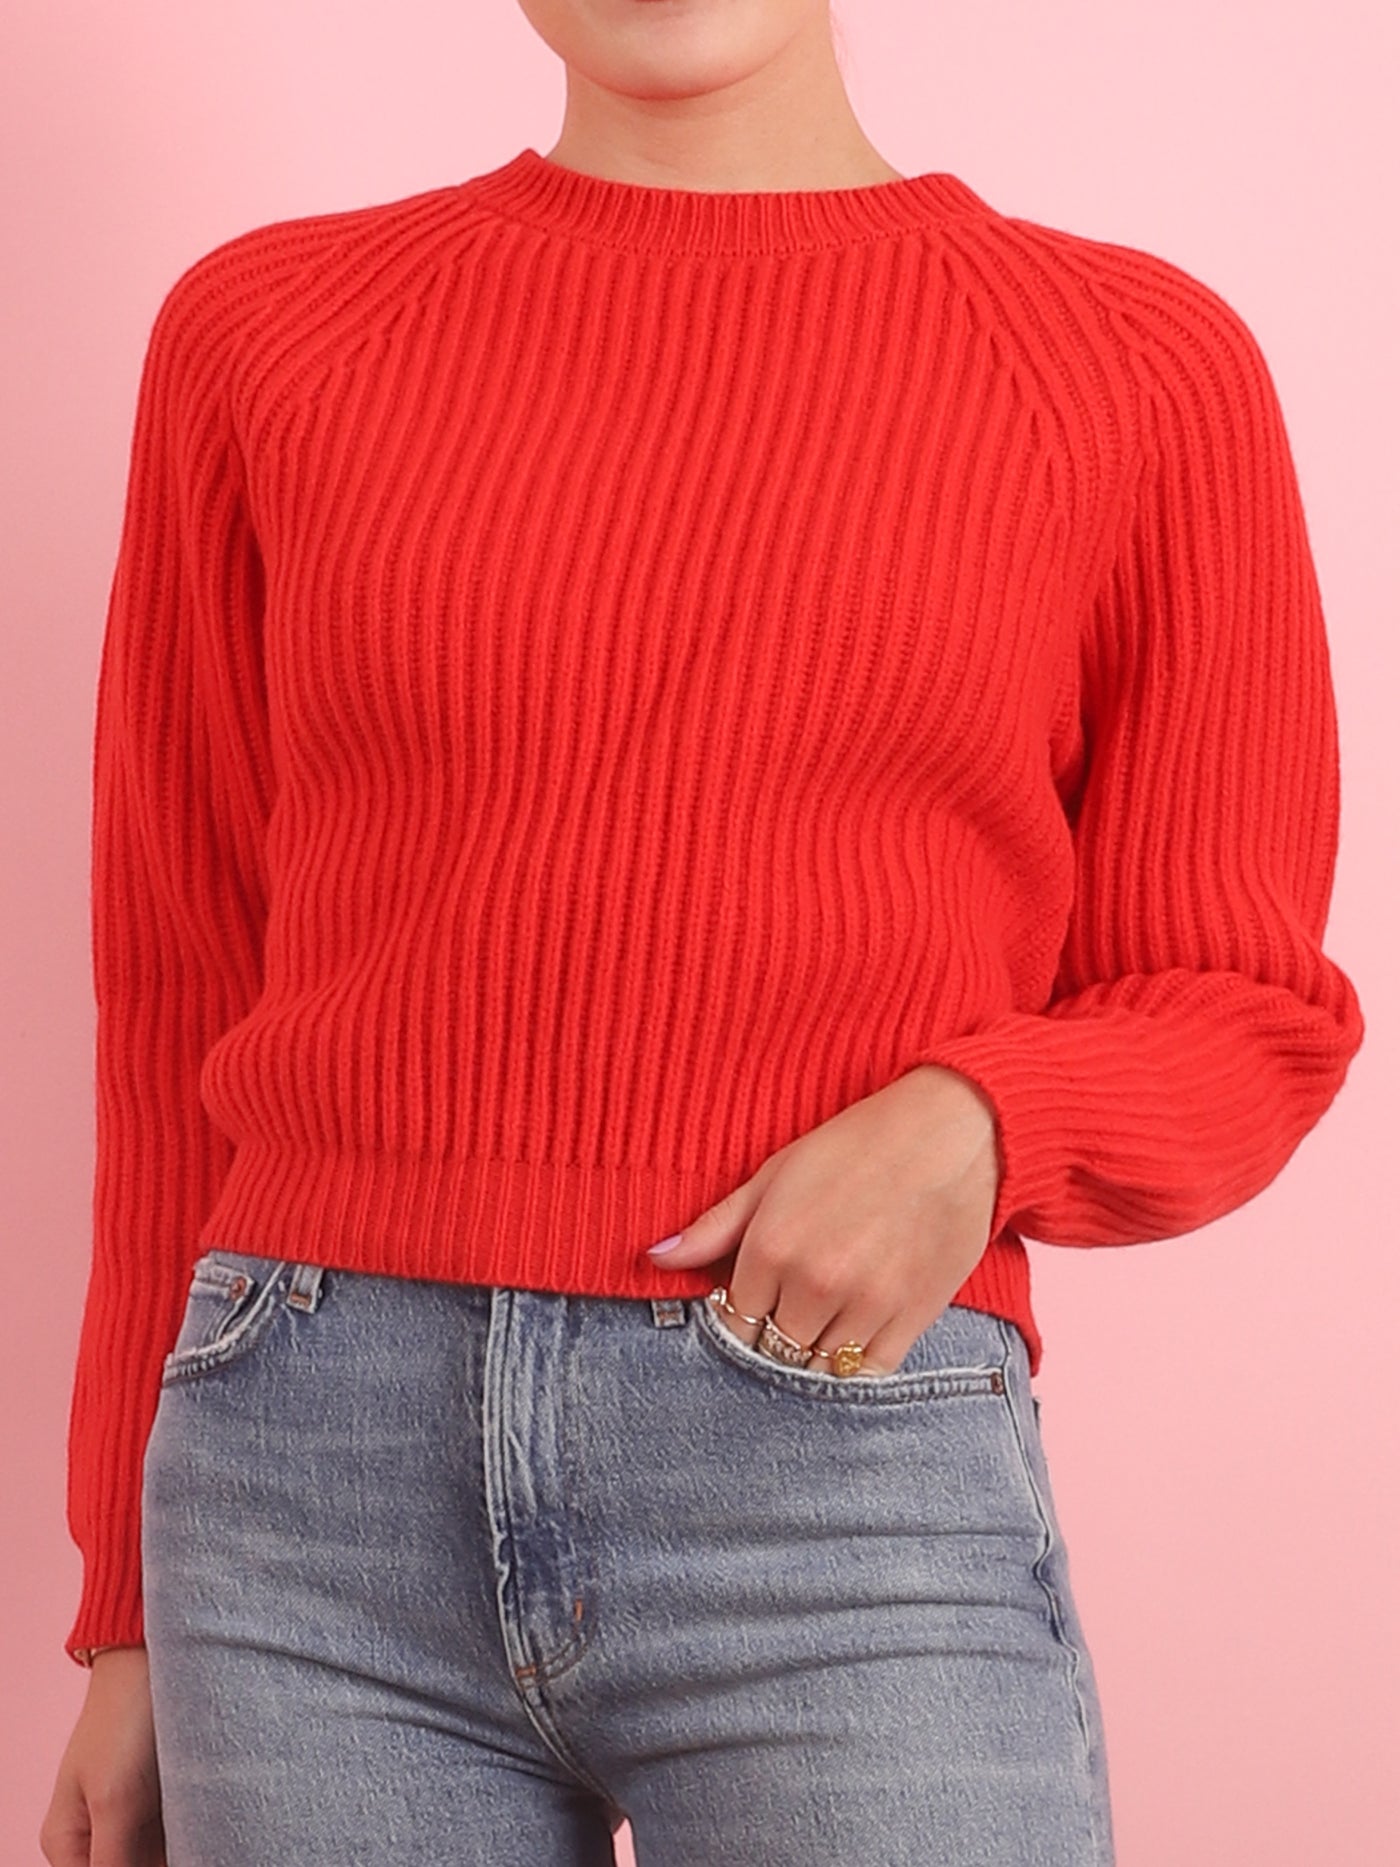 Bardana Sweater